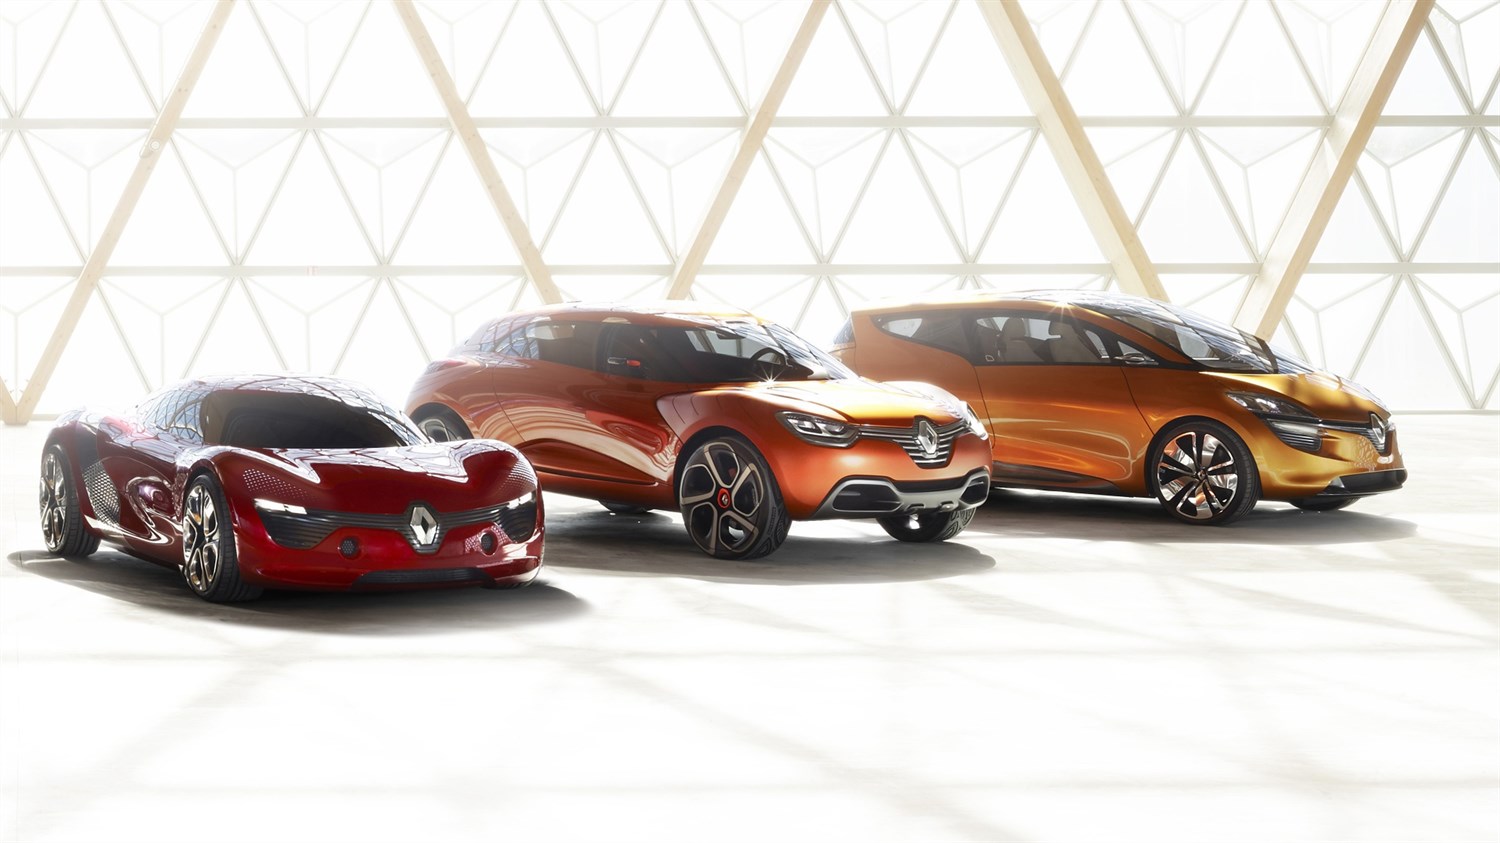 Renault - gamme concept-cars - 3 véhicules vue 3/4 avant droit